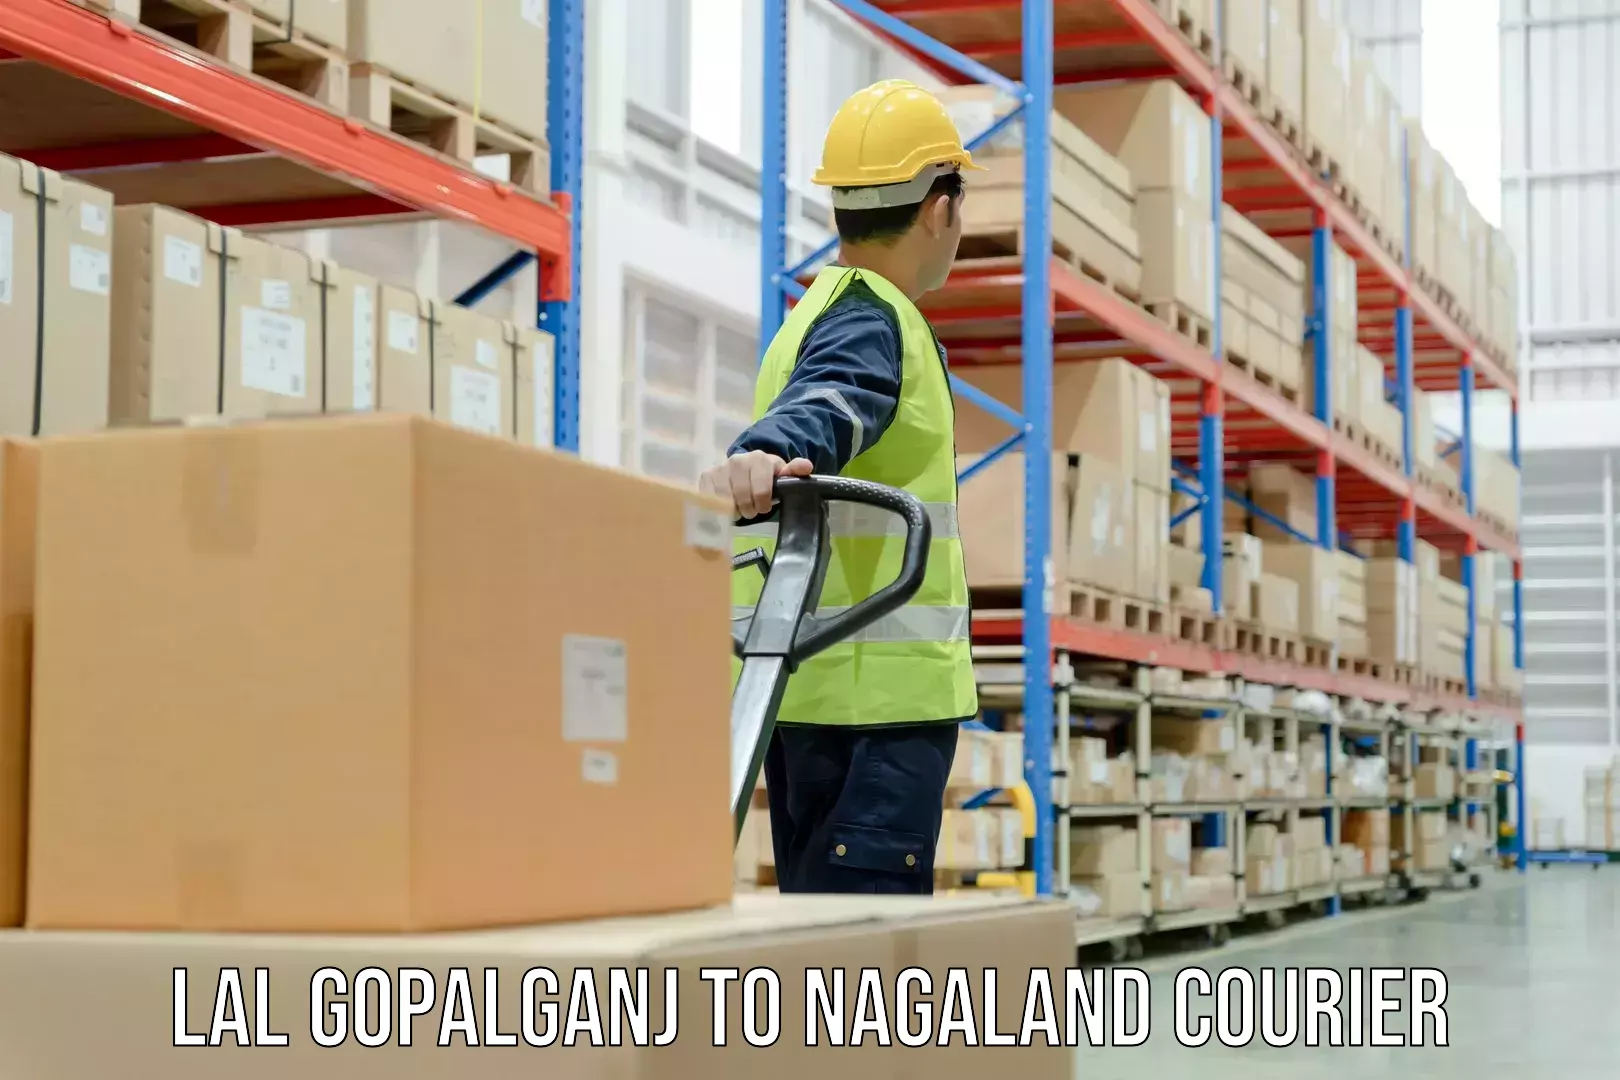 Courier service comparison Lal Gopalganj to Nagaland